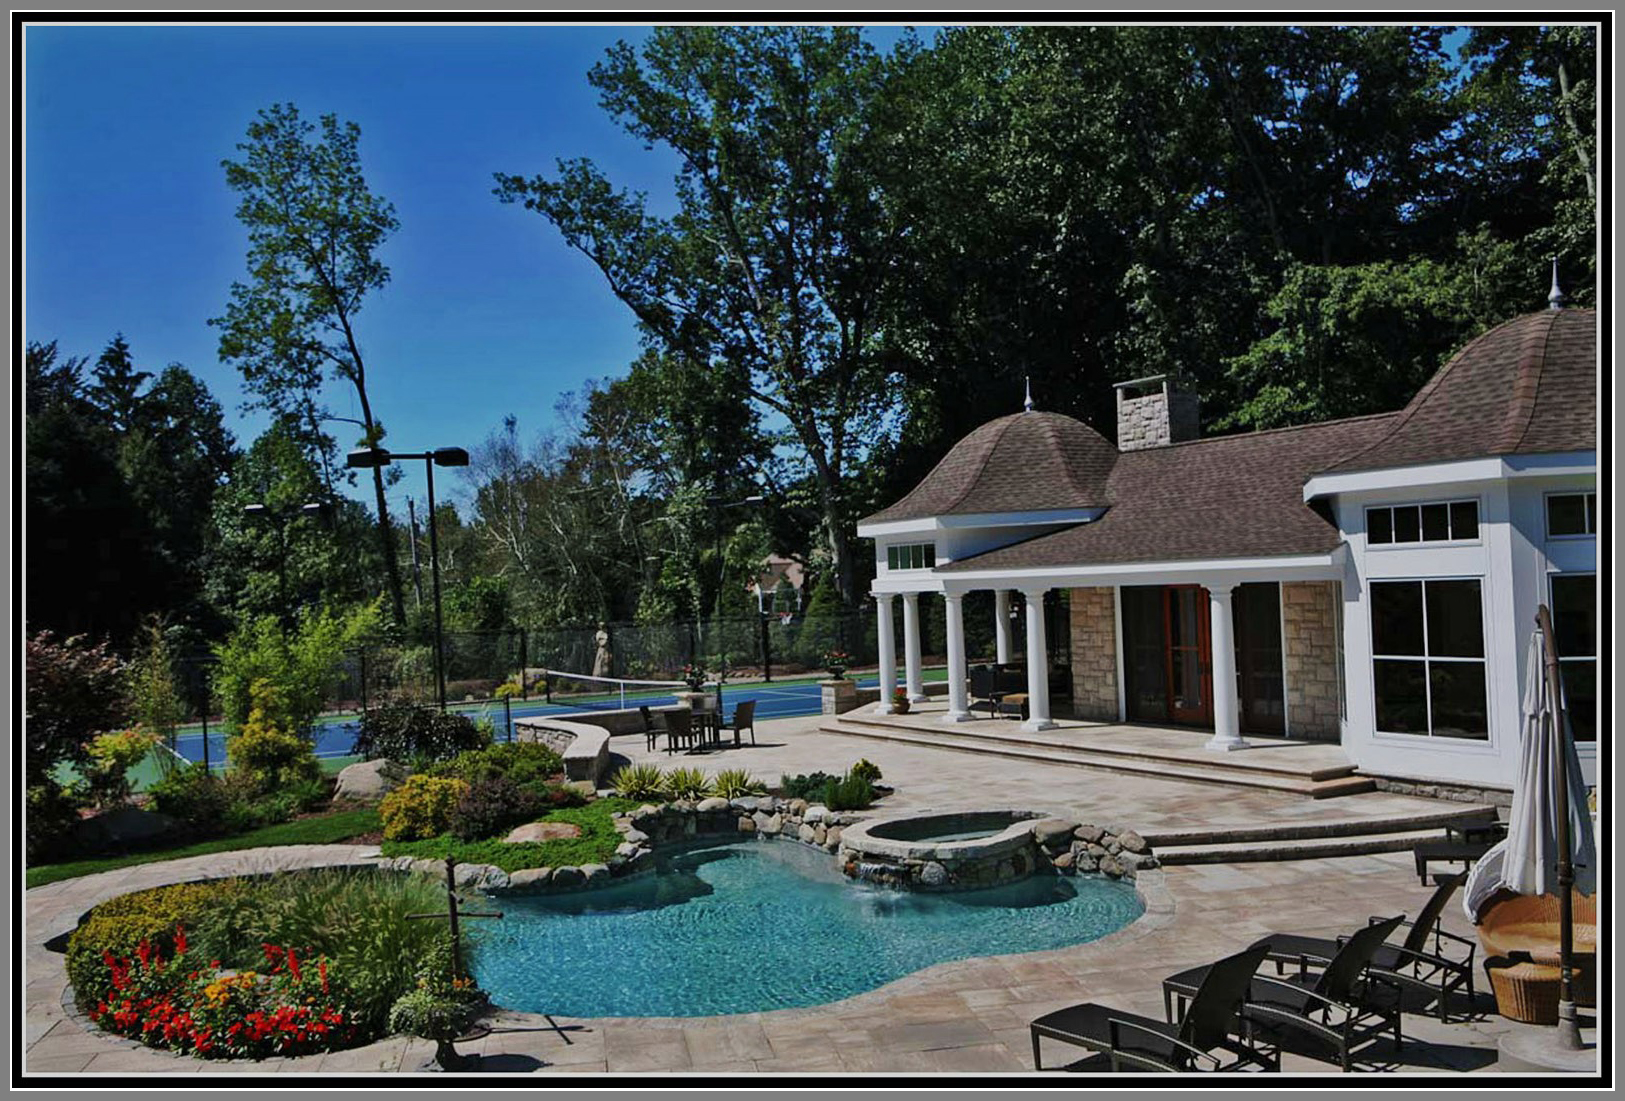 Swimming pool, granite deck and pool house.